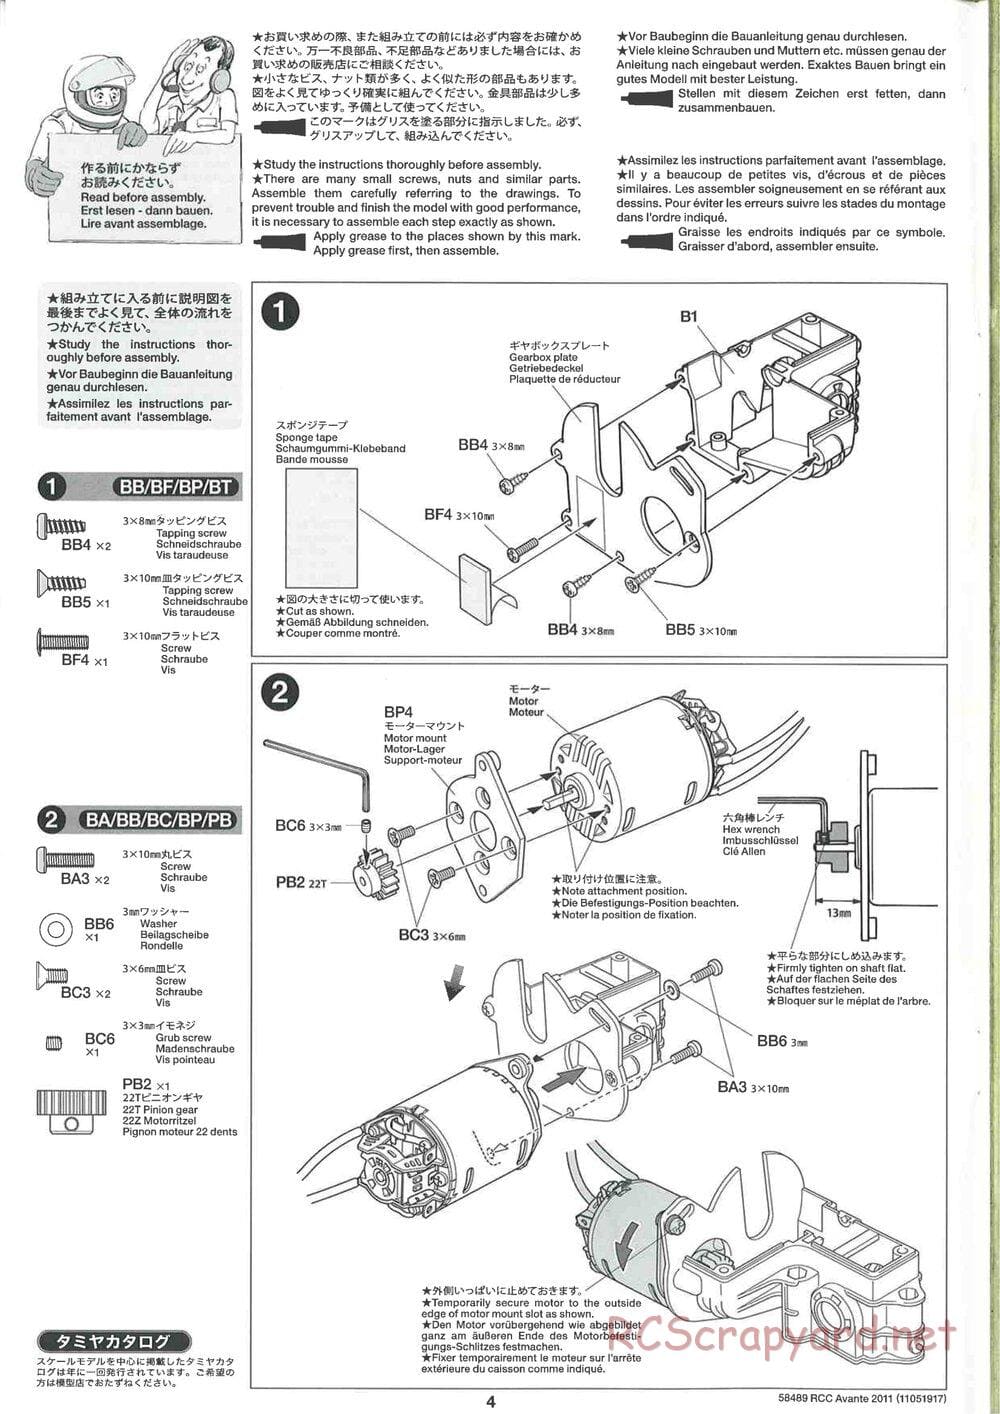 Tamiya - Avante 2011 - AV Chassis - Manual - Page 4